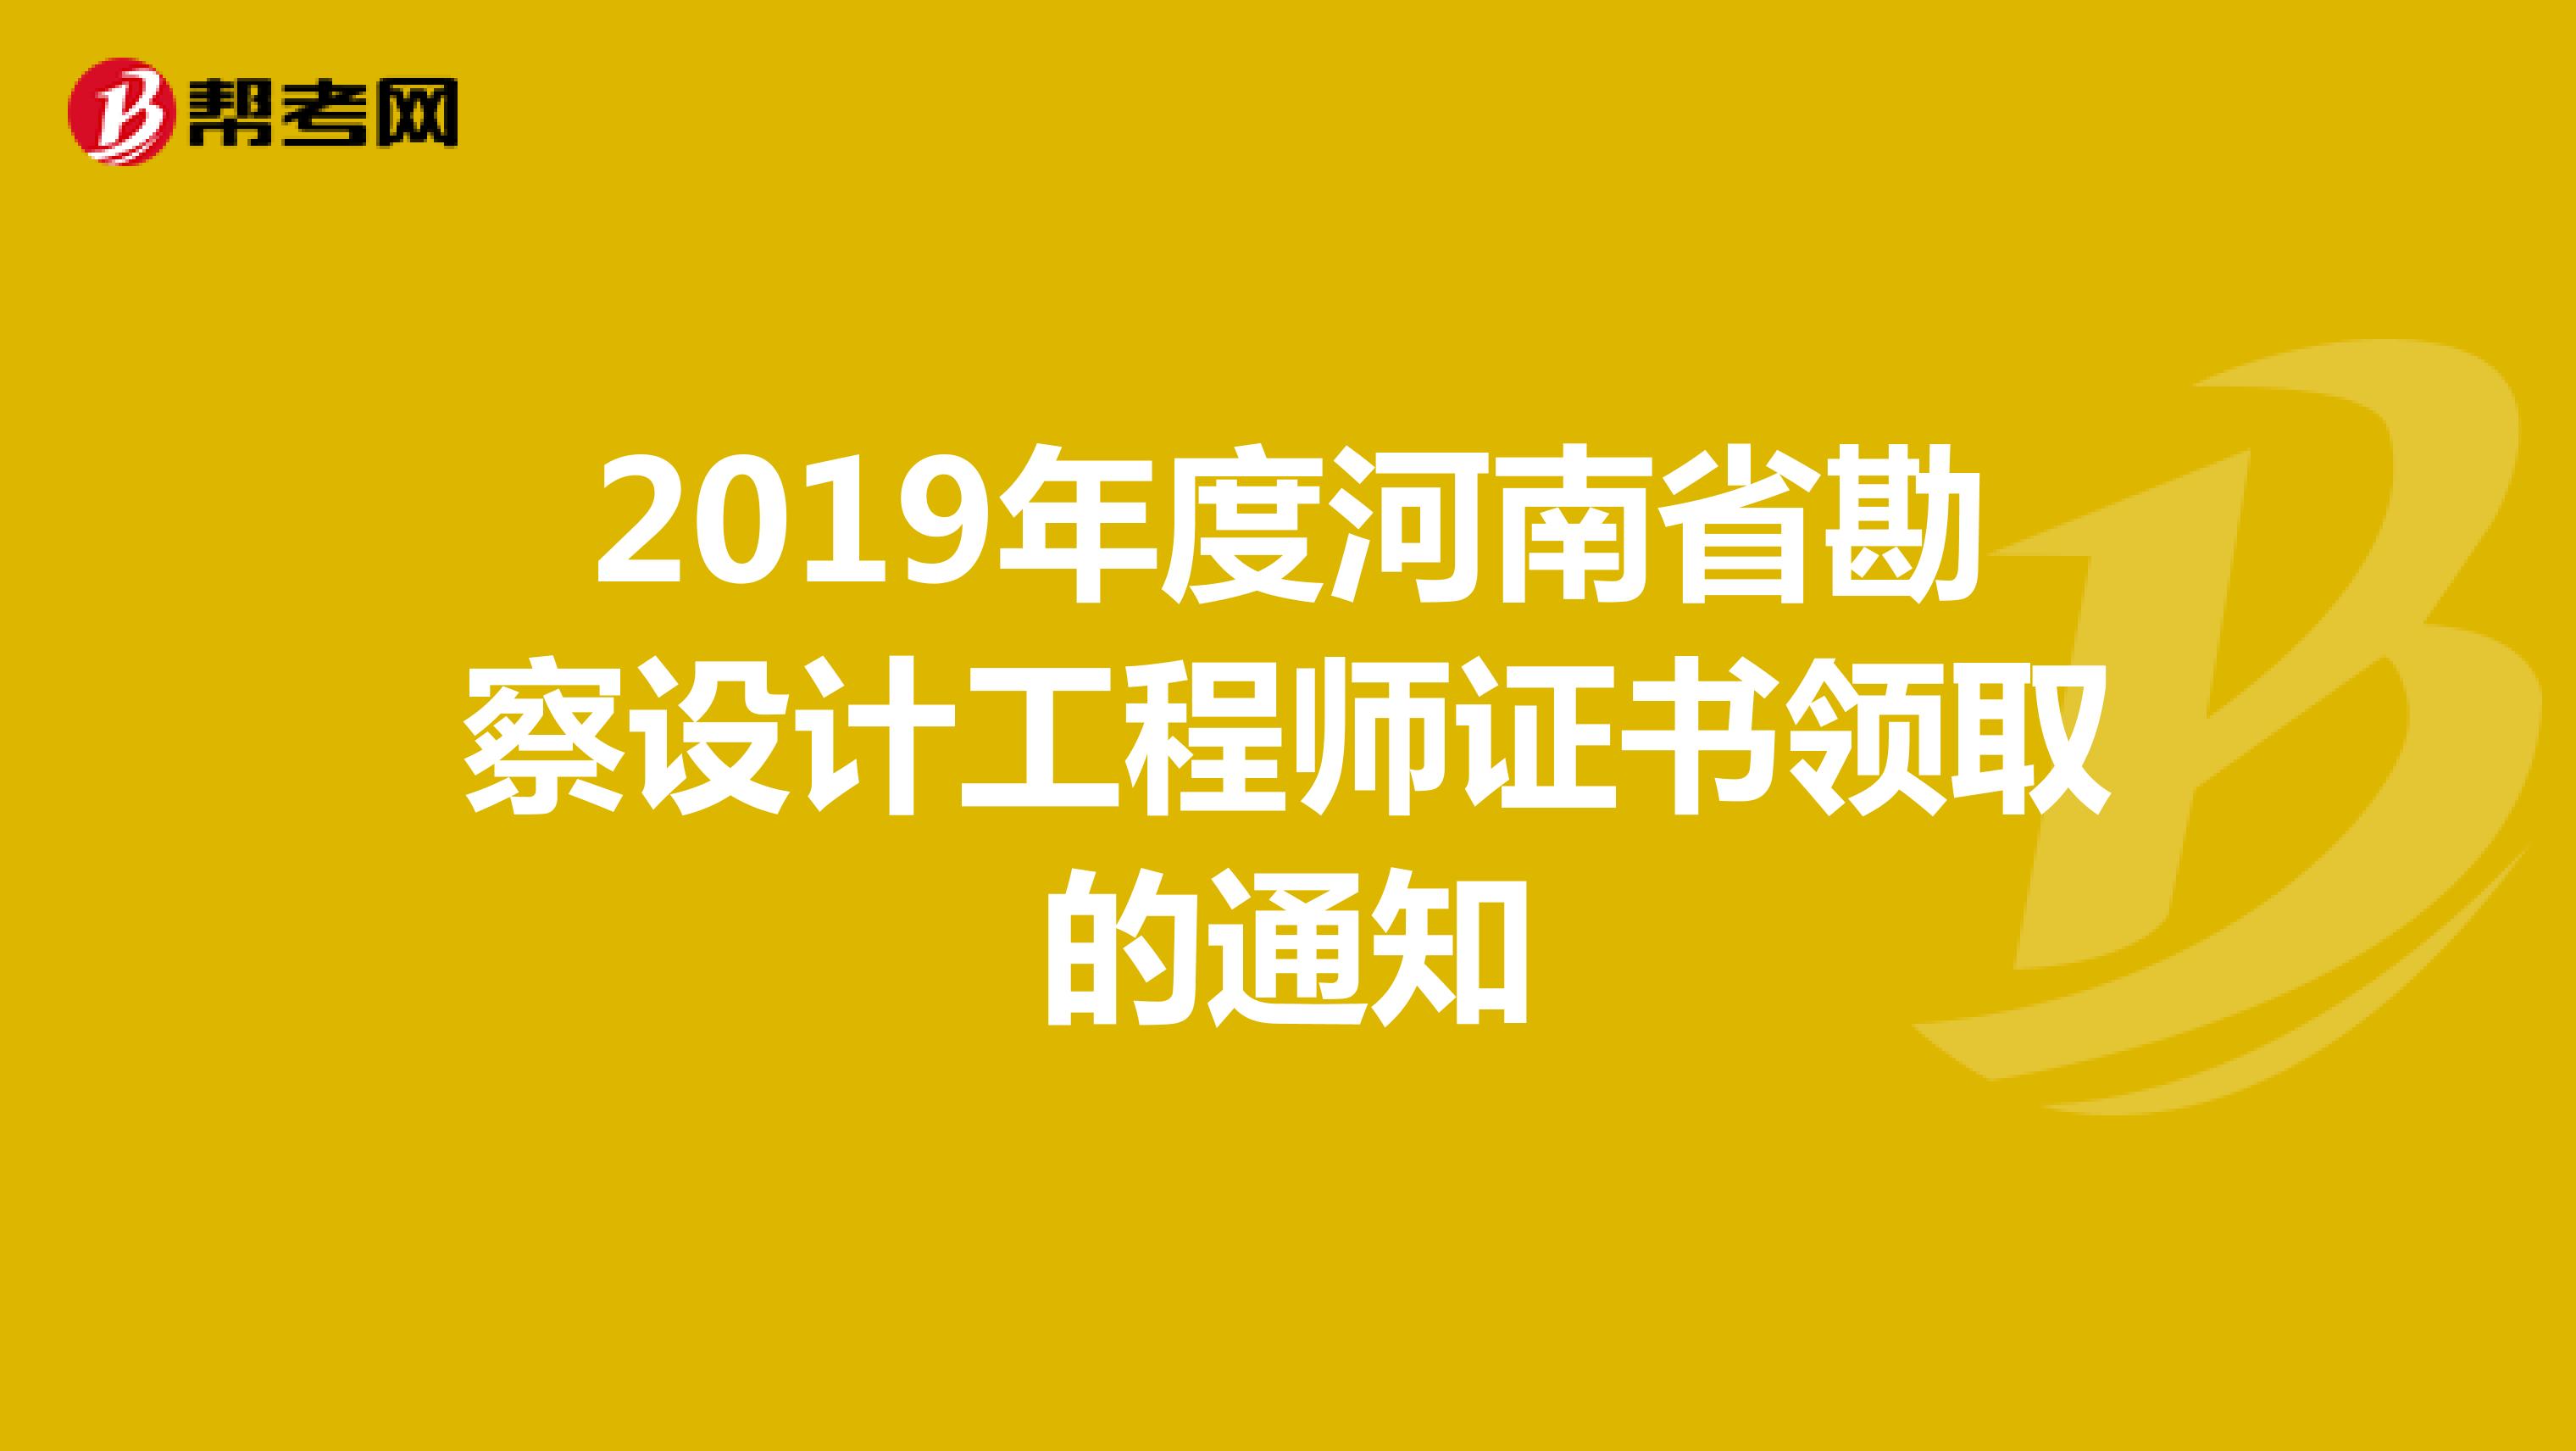 2019年度河南省勘察设计工程师证书领取的通知